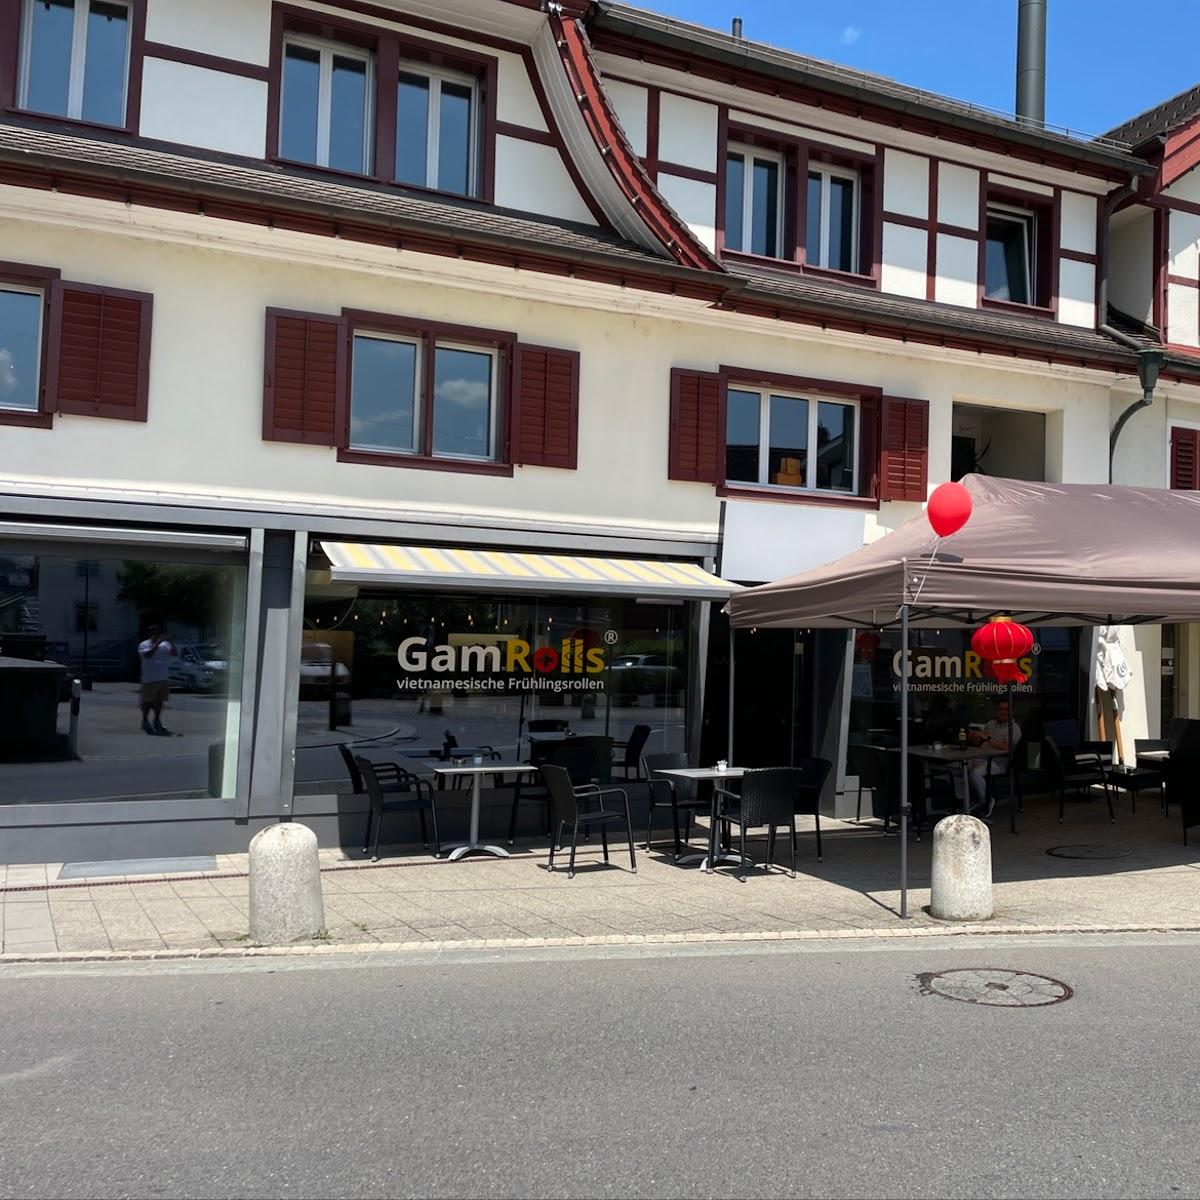 Restaurant "GamRolls" in Baar